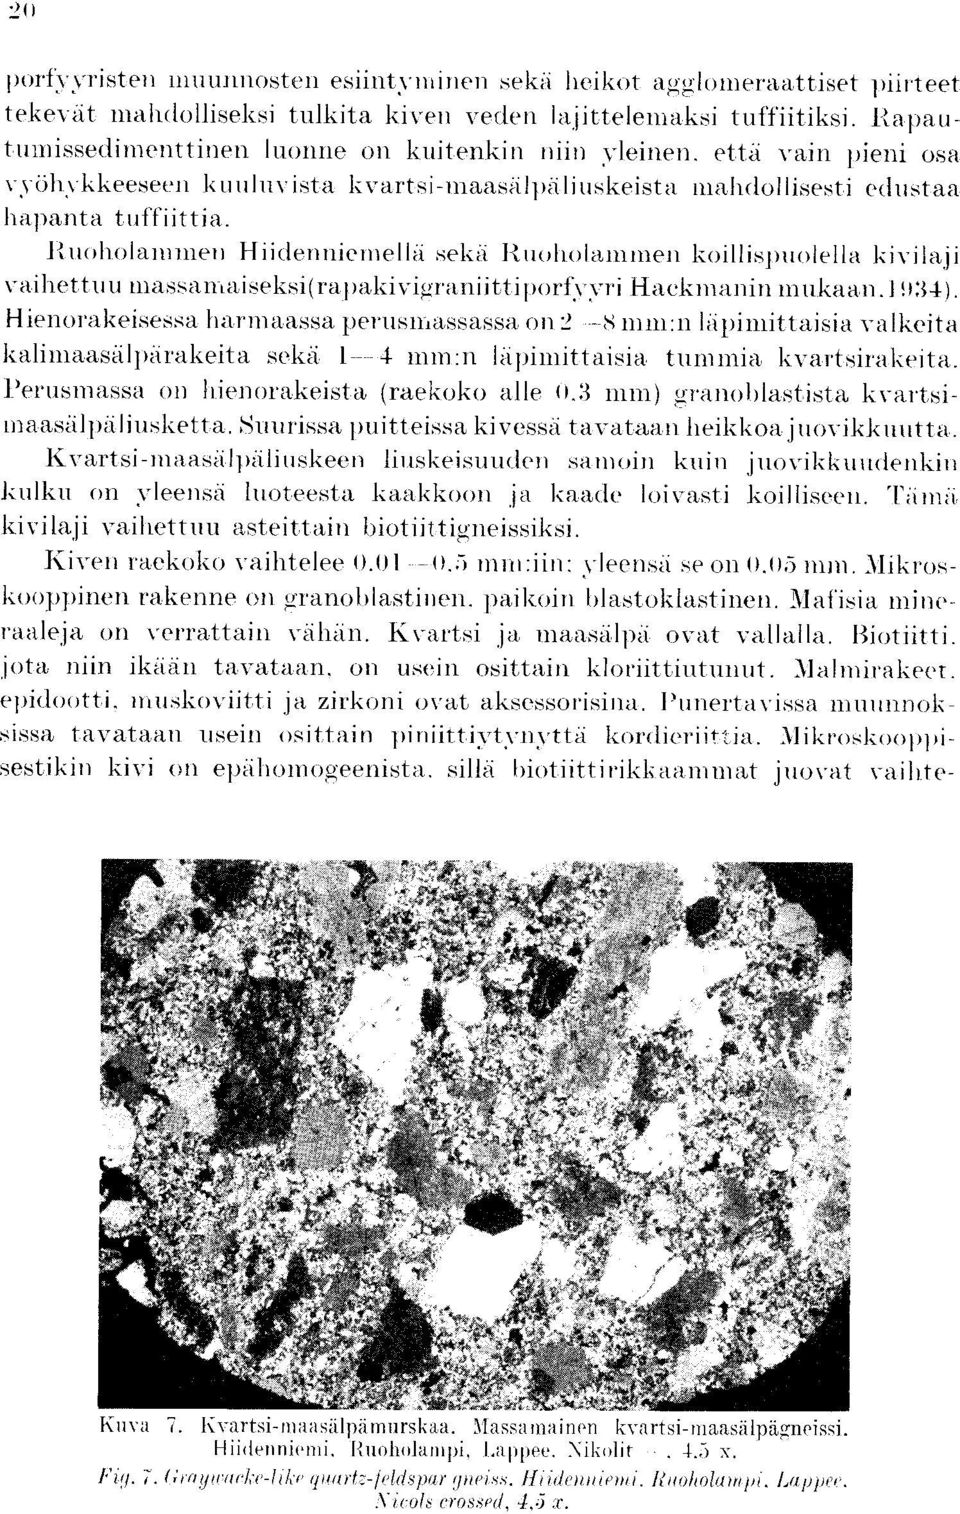 Riuiholannnen Hiidenniemella sekii l-uoholaintnen koillispuolella kivilaji vailiett.uu massamaiseksi(rapakivigraniittiporfvvvri Hackmanin mnkaan.i )34).